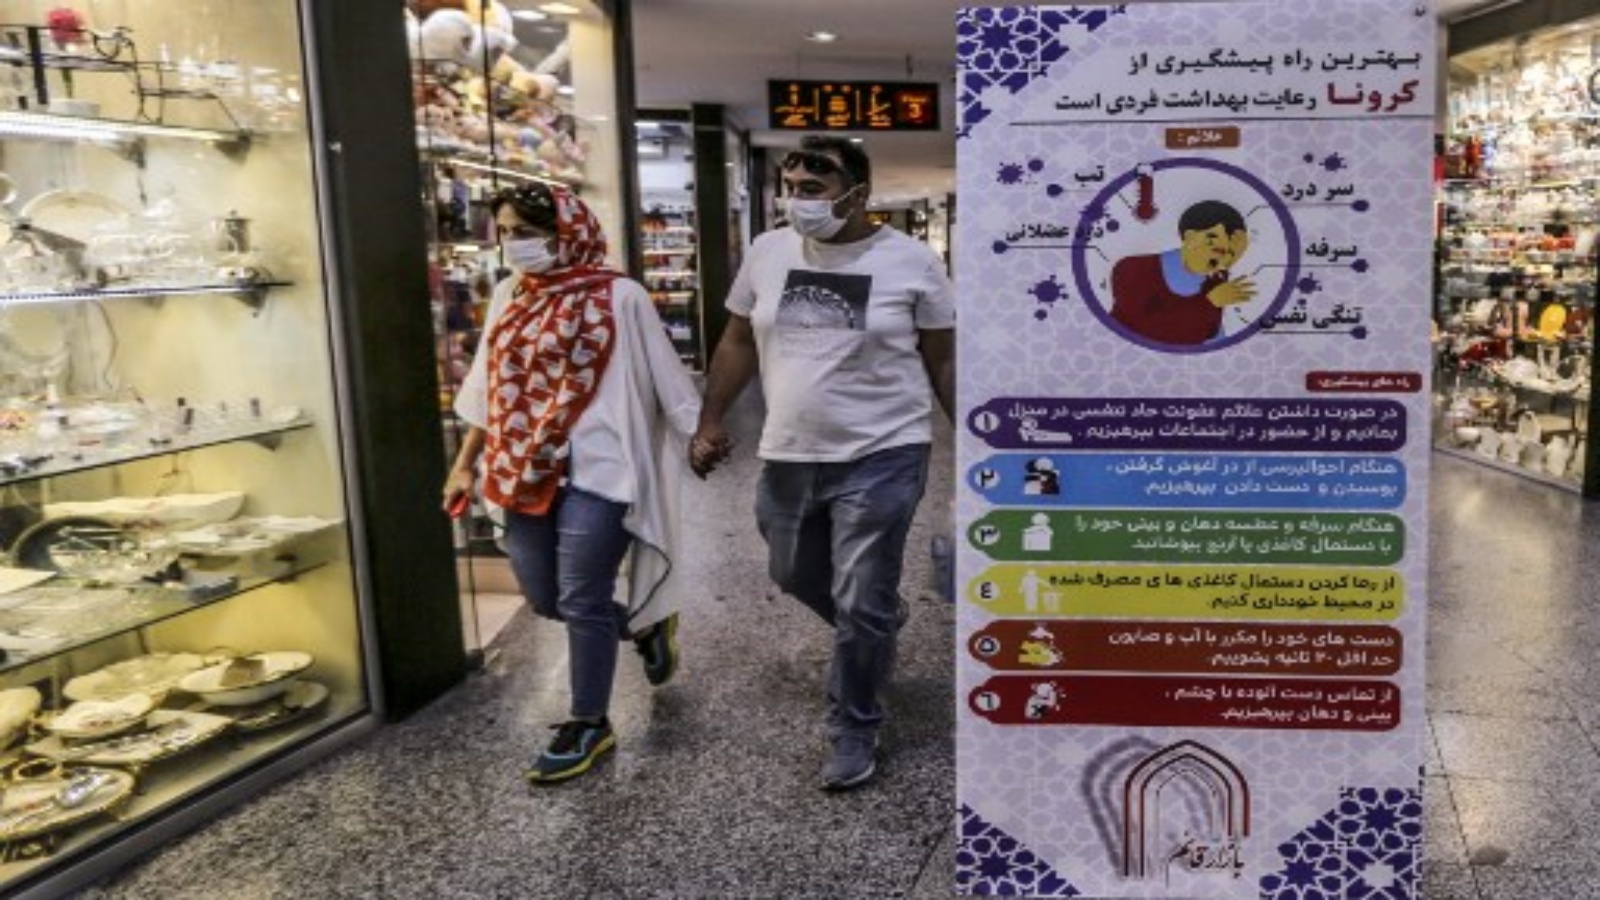 إيرانيان يمشيان بجوار لافتة تنصح الناس بارتداء أقنعة أثناء التسوق في ساحة تاجريش بالعاصمة طهران في 1 نوفمبر 2020 